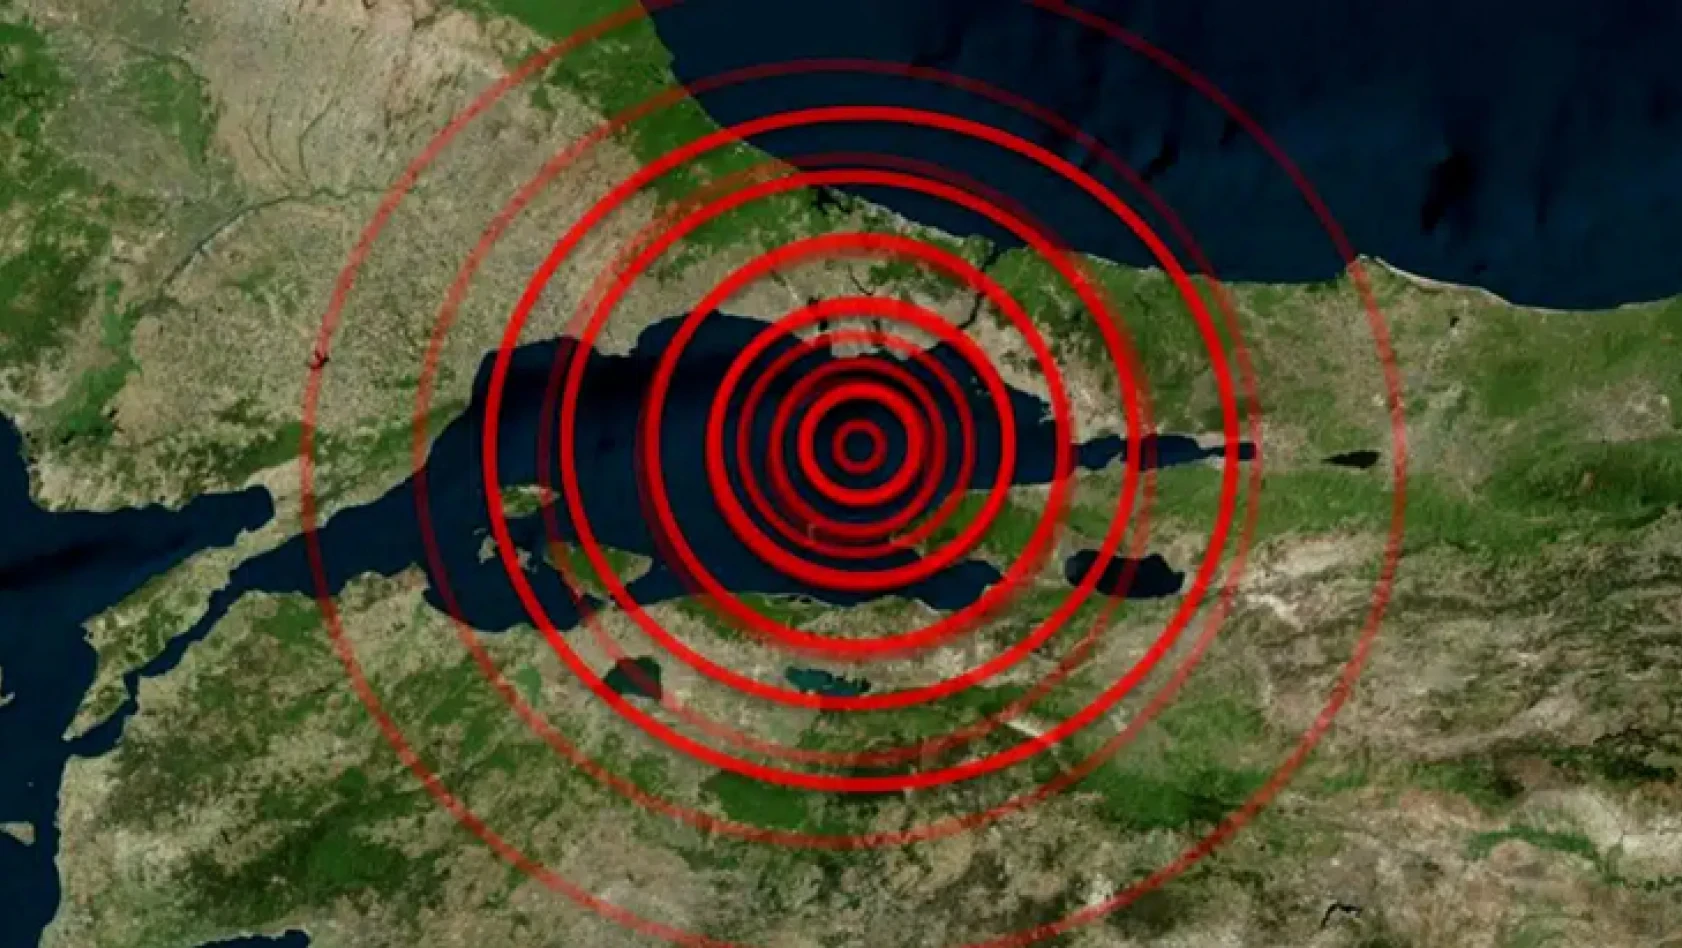 Uzman isim, ilçe vererek uyardı! Olası İstanbul depreminde dikkat çeken 'kış' detayı…